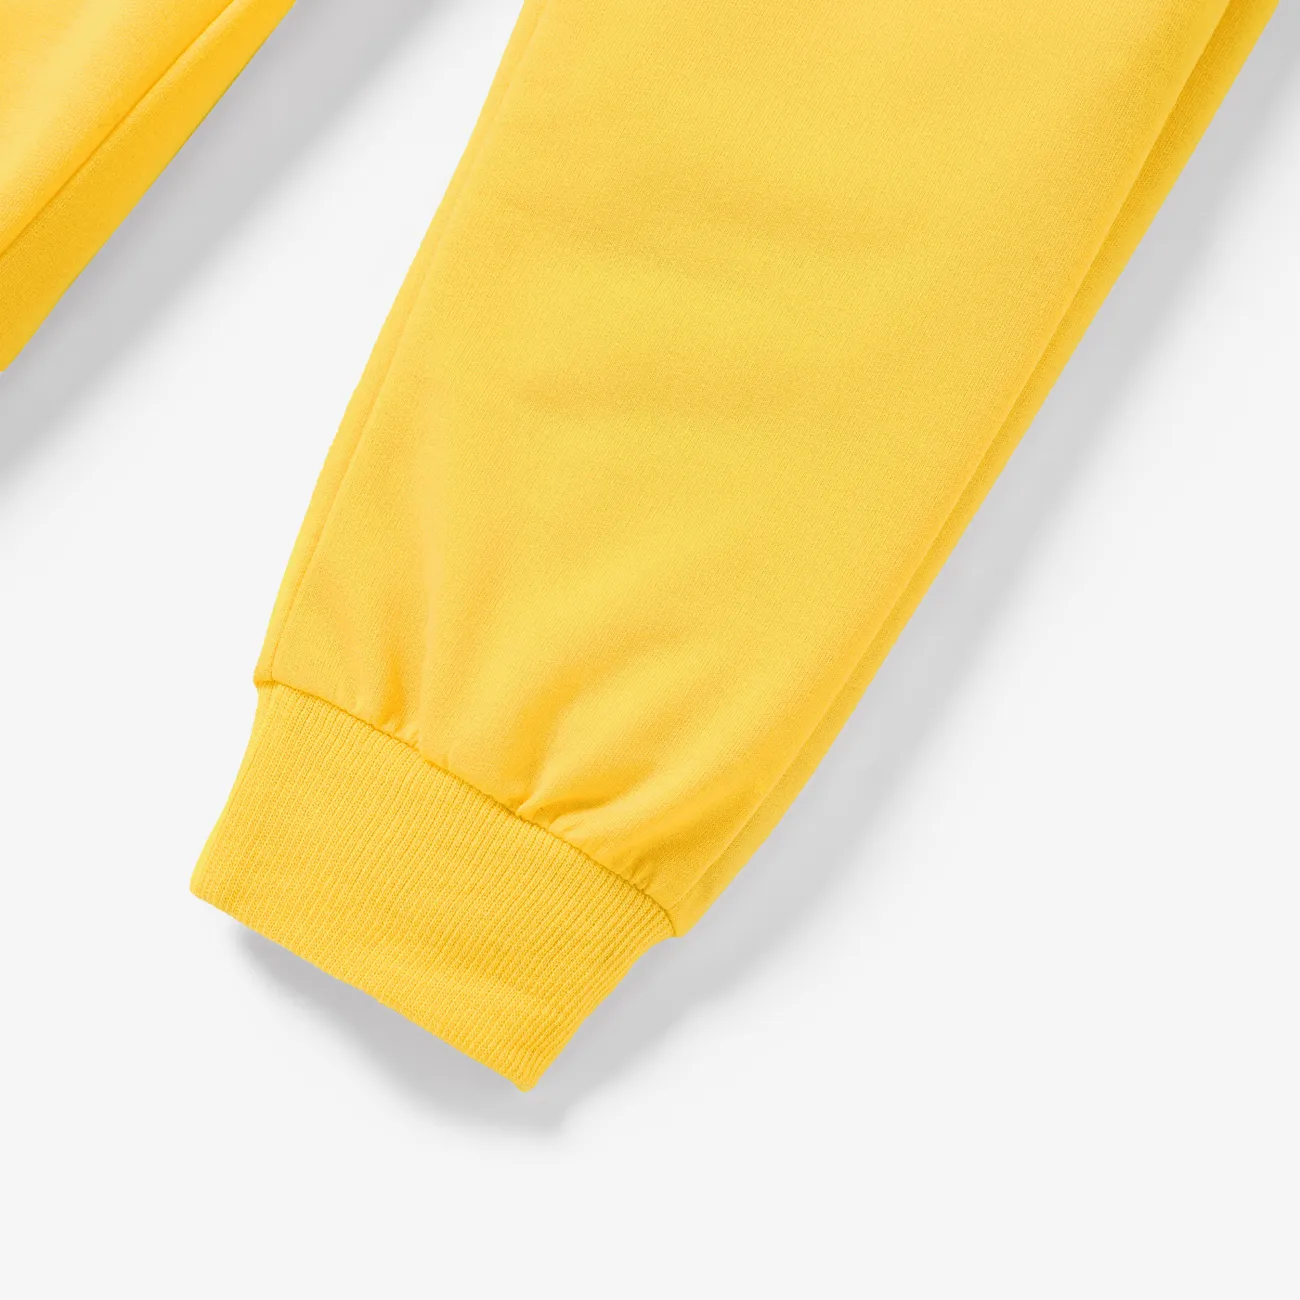 Einfarbige, elastische Hosen für Kinderjungen/Kindermädchen gelb big image 1